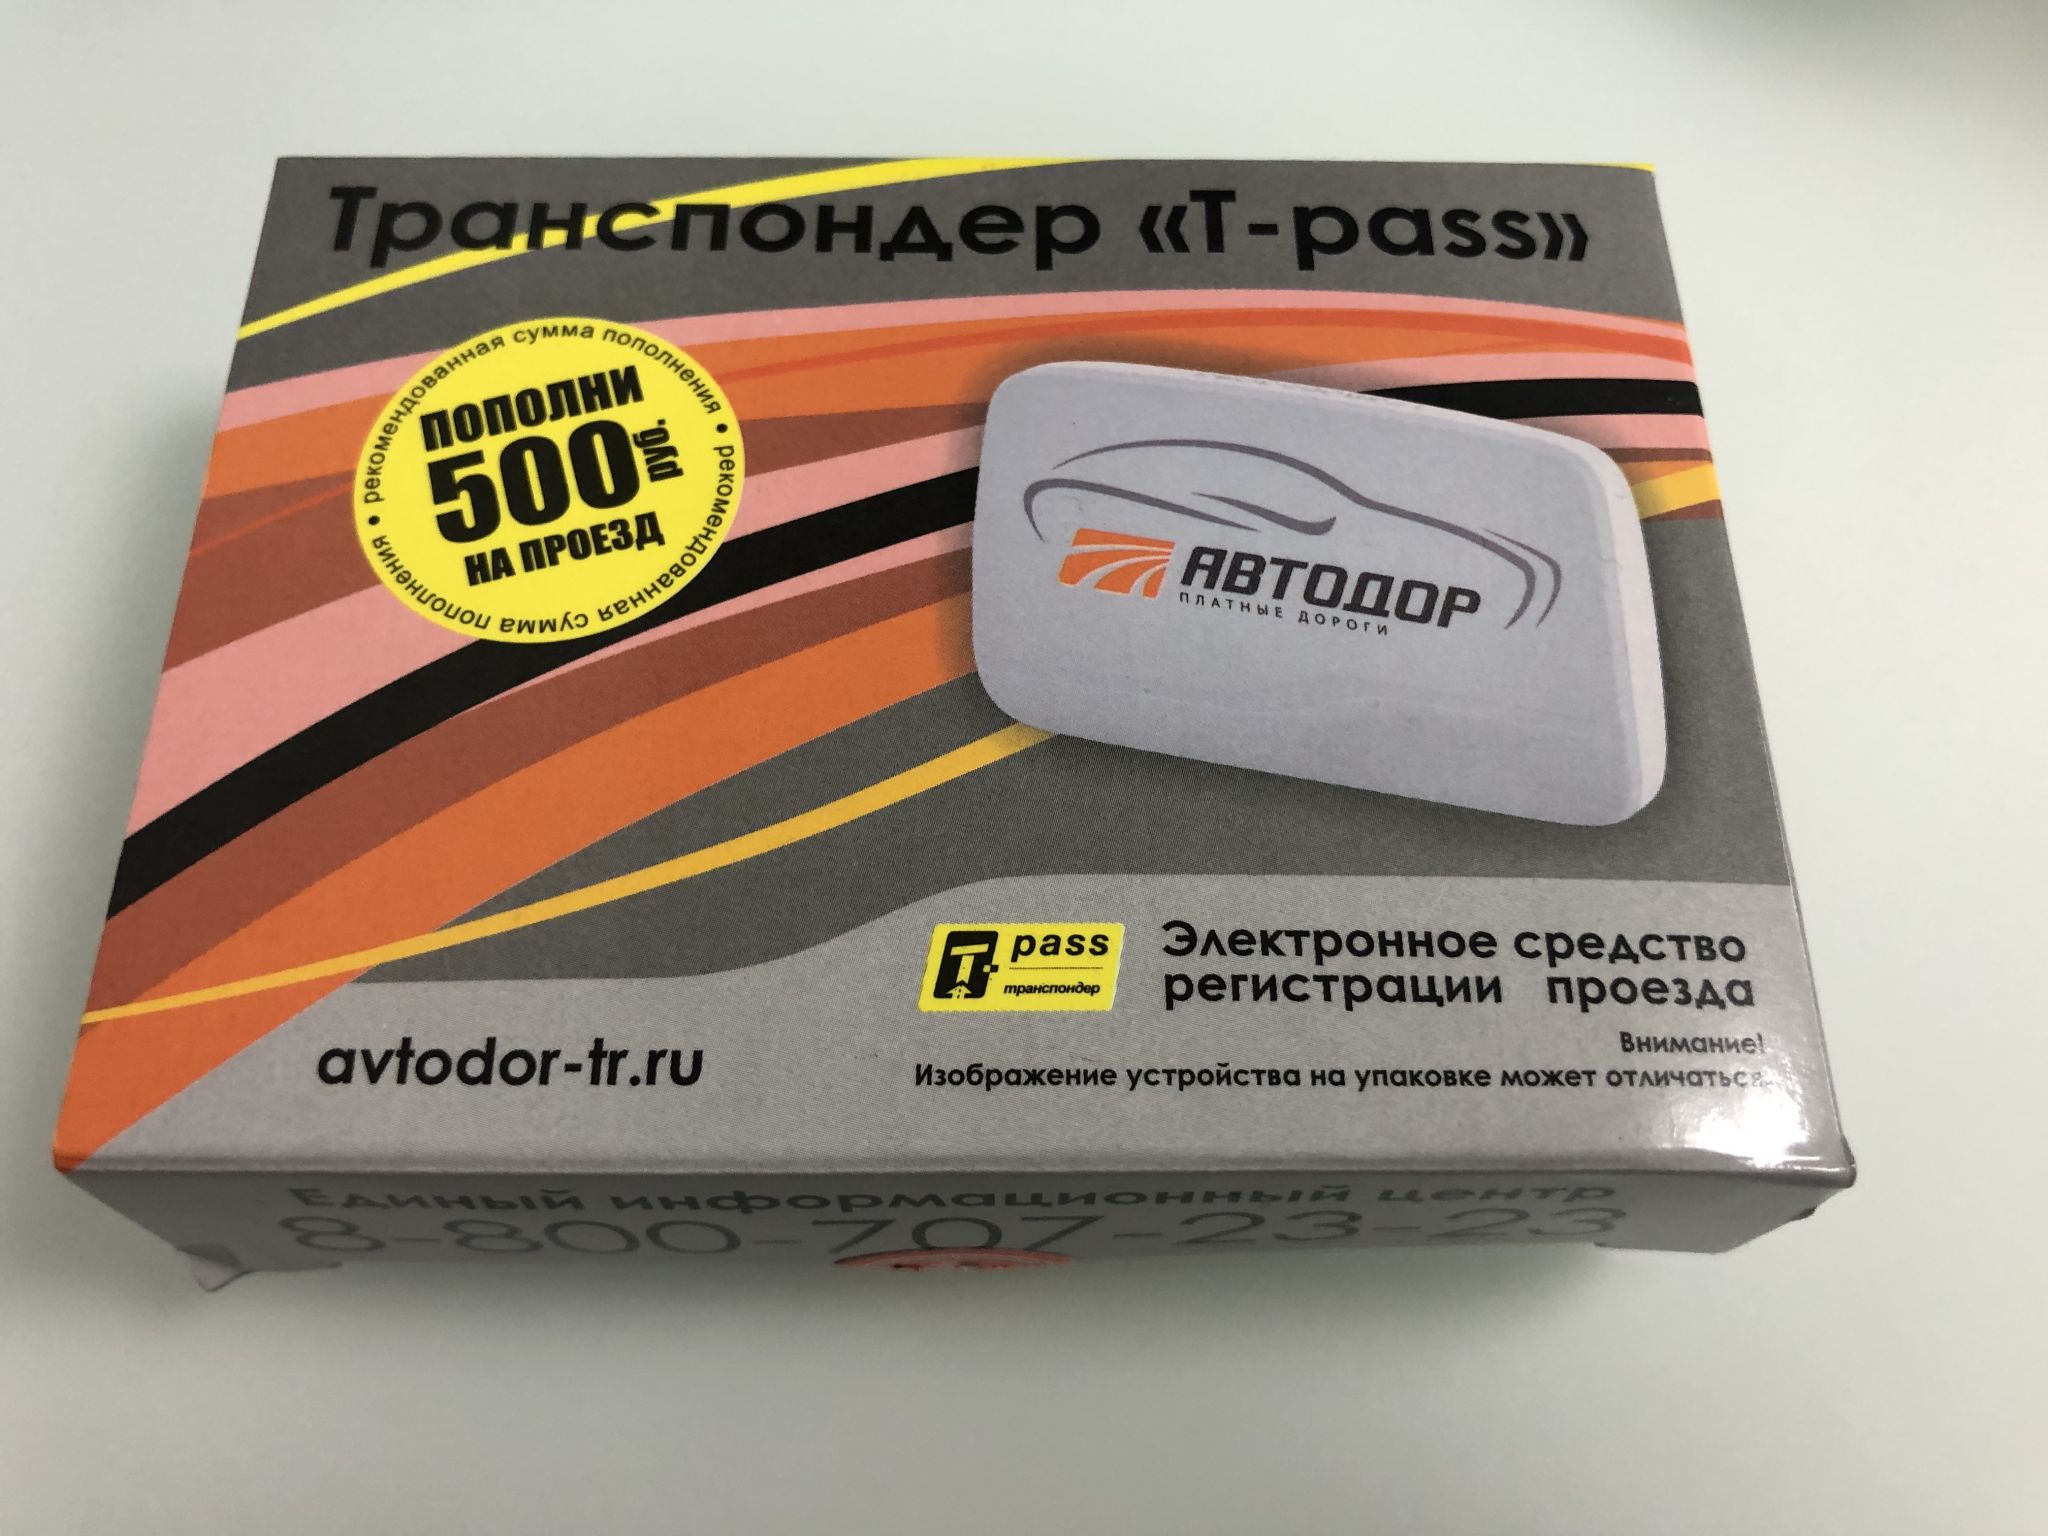 Где Можно Купить Транспондер В Санкт Петербурге